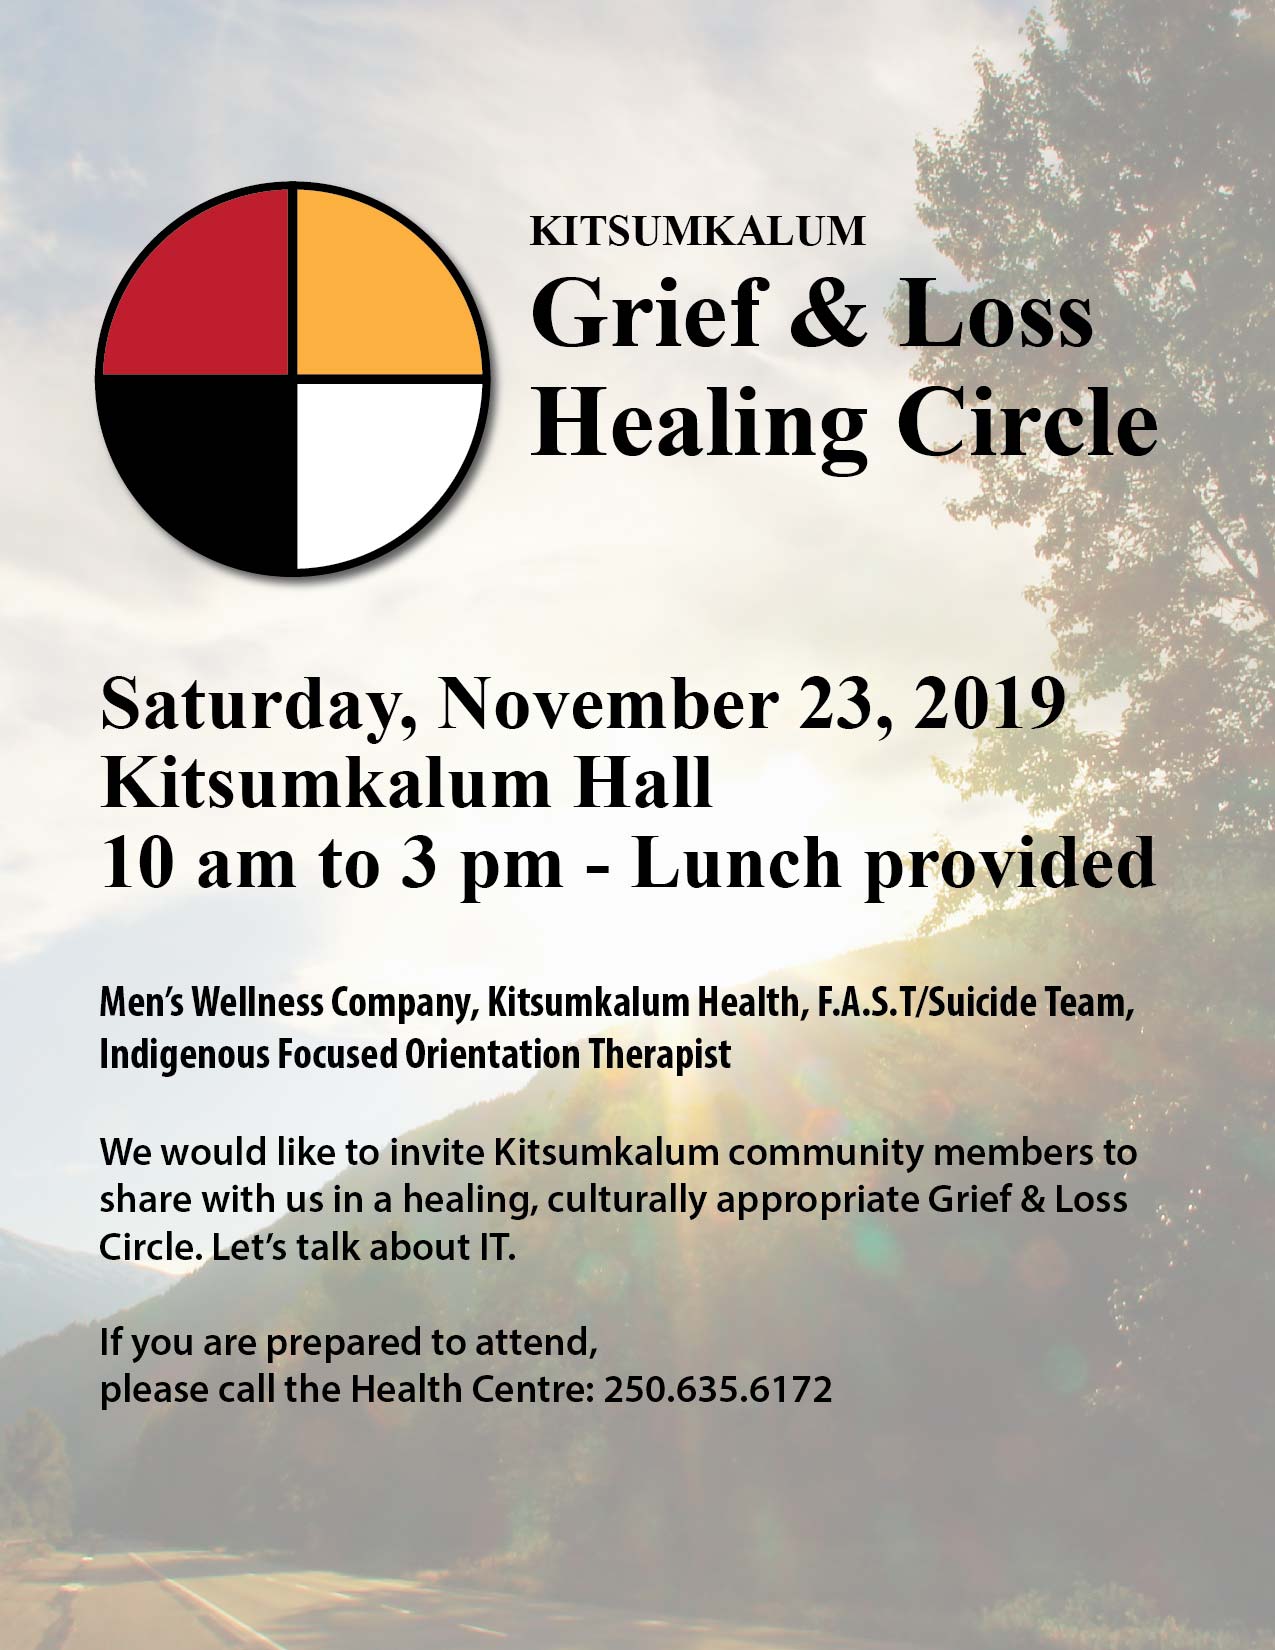 Kitsumkalum Grief and Loss Healing Circle